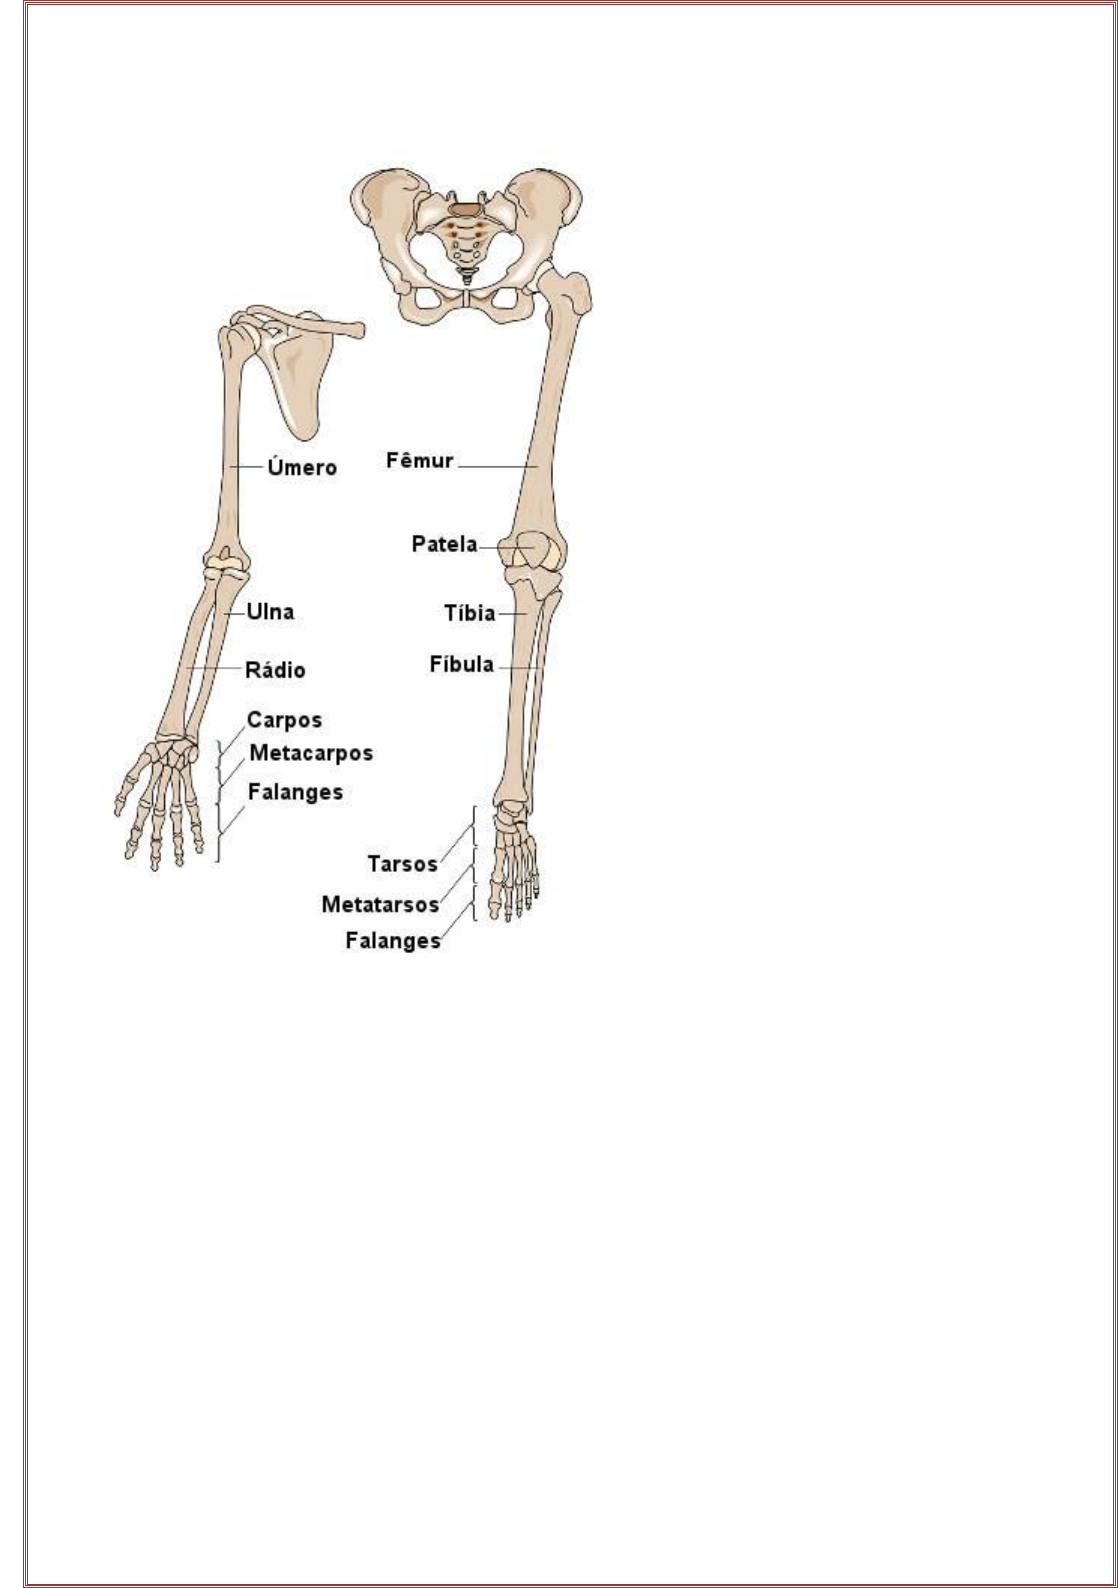 Esqueleto humano: nomes dos ossos, funções e divisões